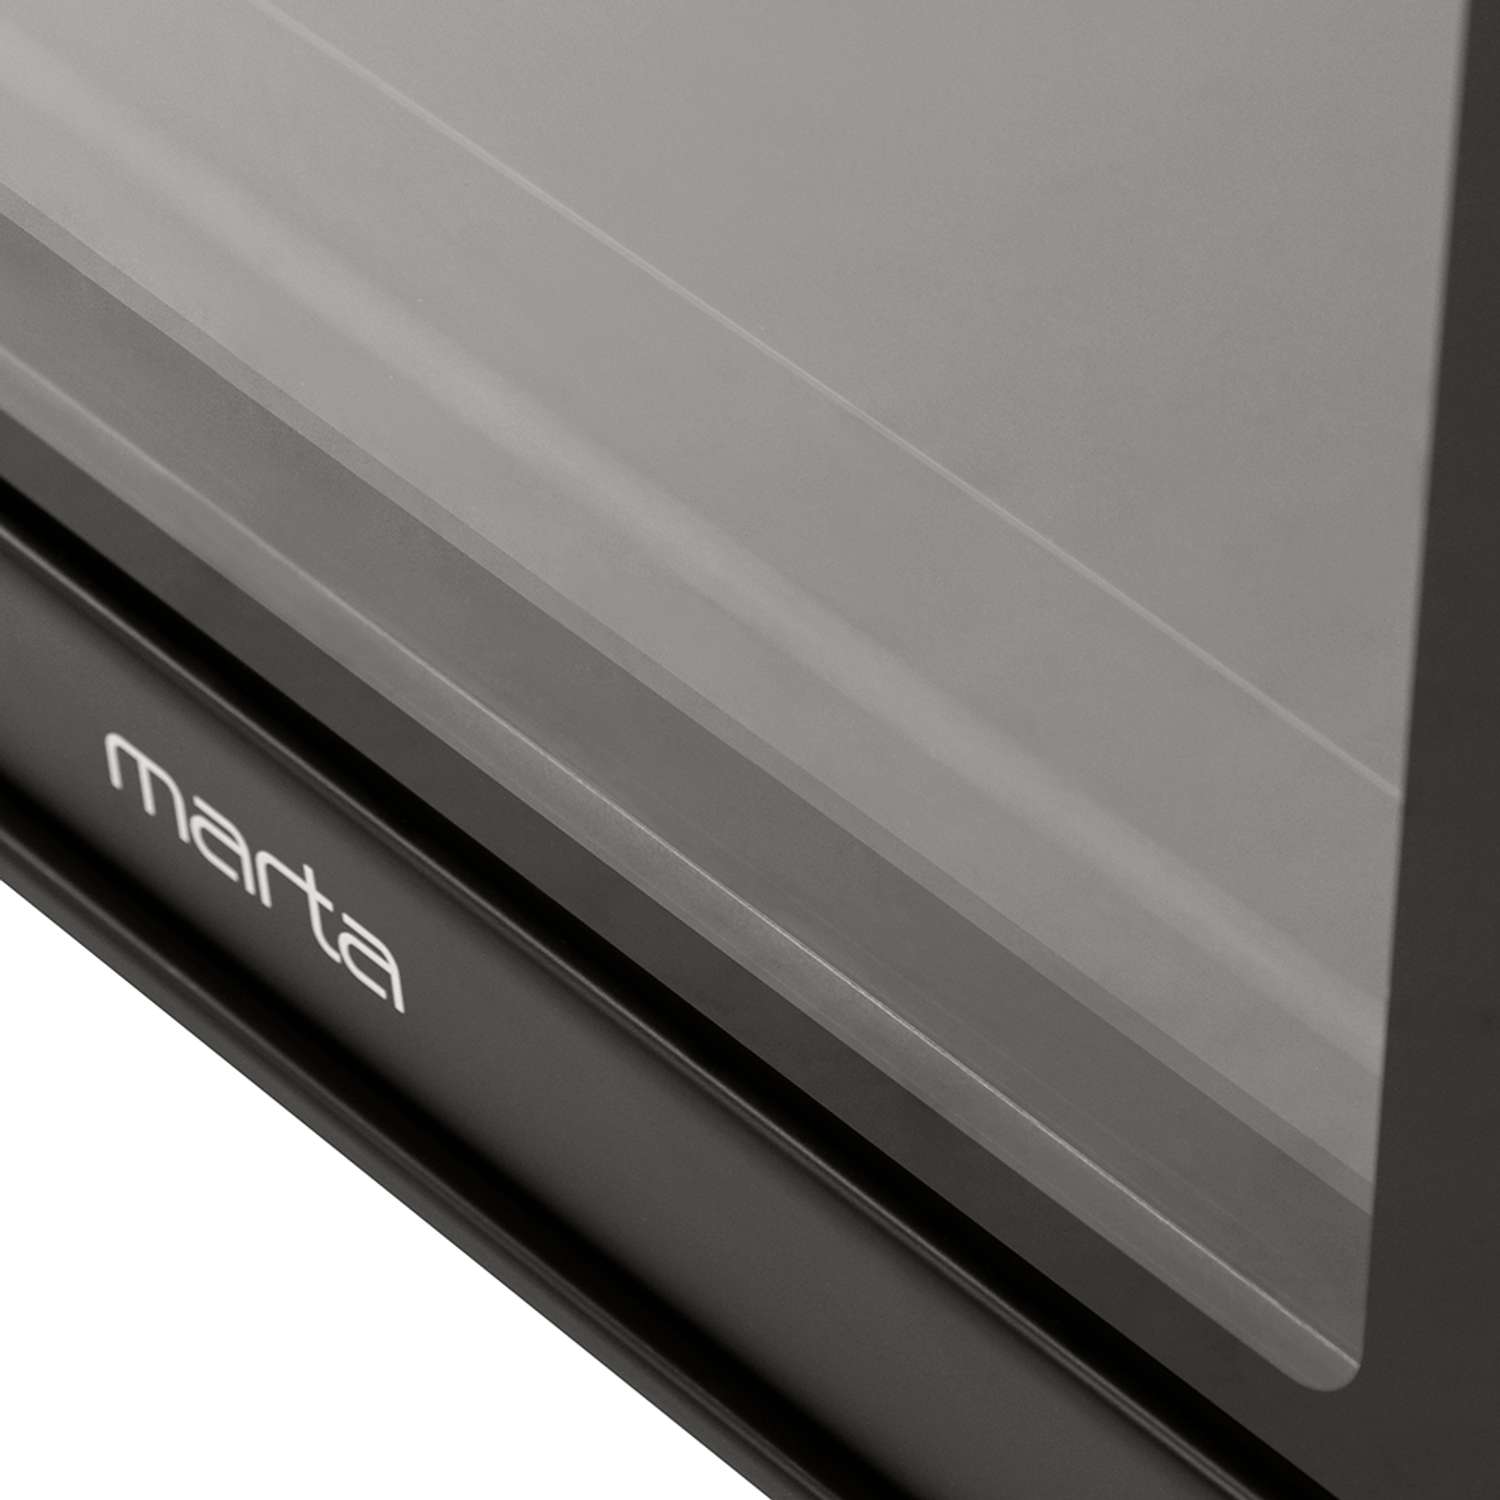 Мини-печь MARTA MT-4281 духовой шкаф 40 литров/конвекция/шашлычница/вертел/эмаль/черный жемчуг - фото 20